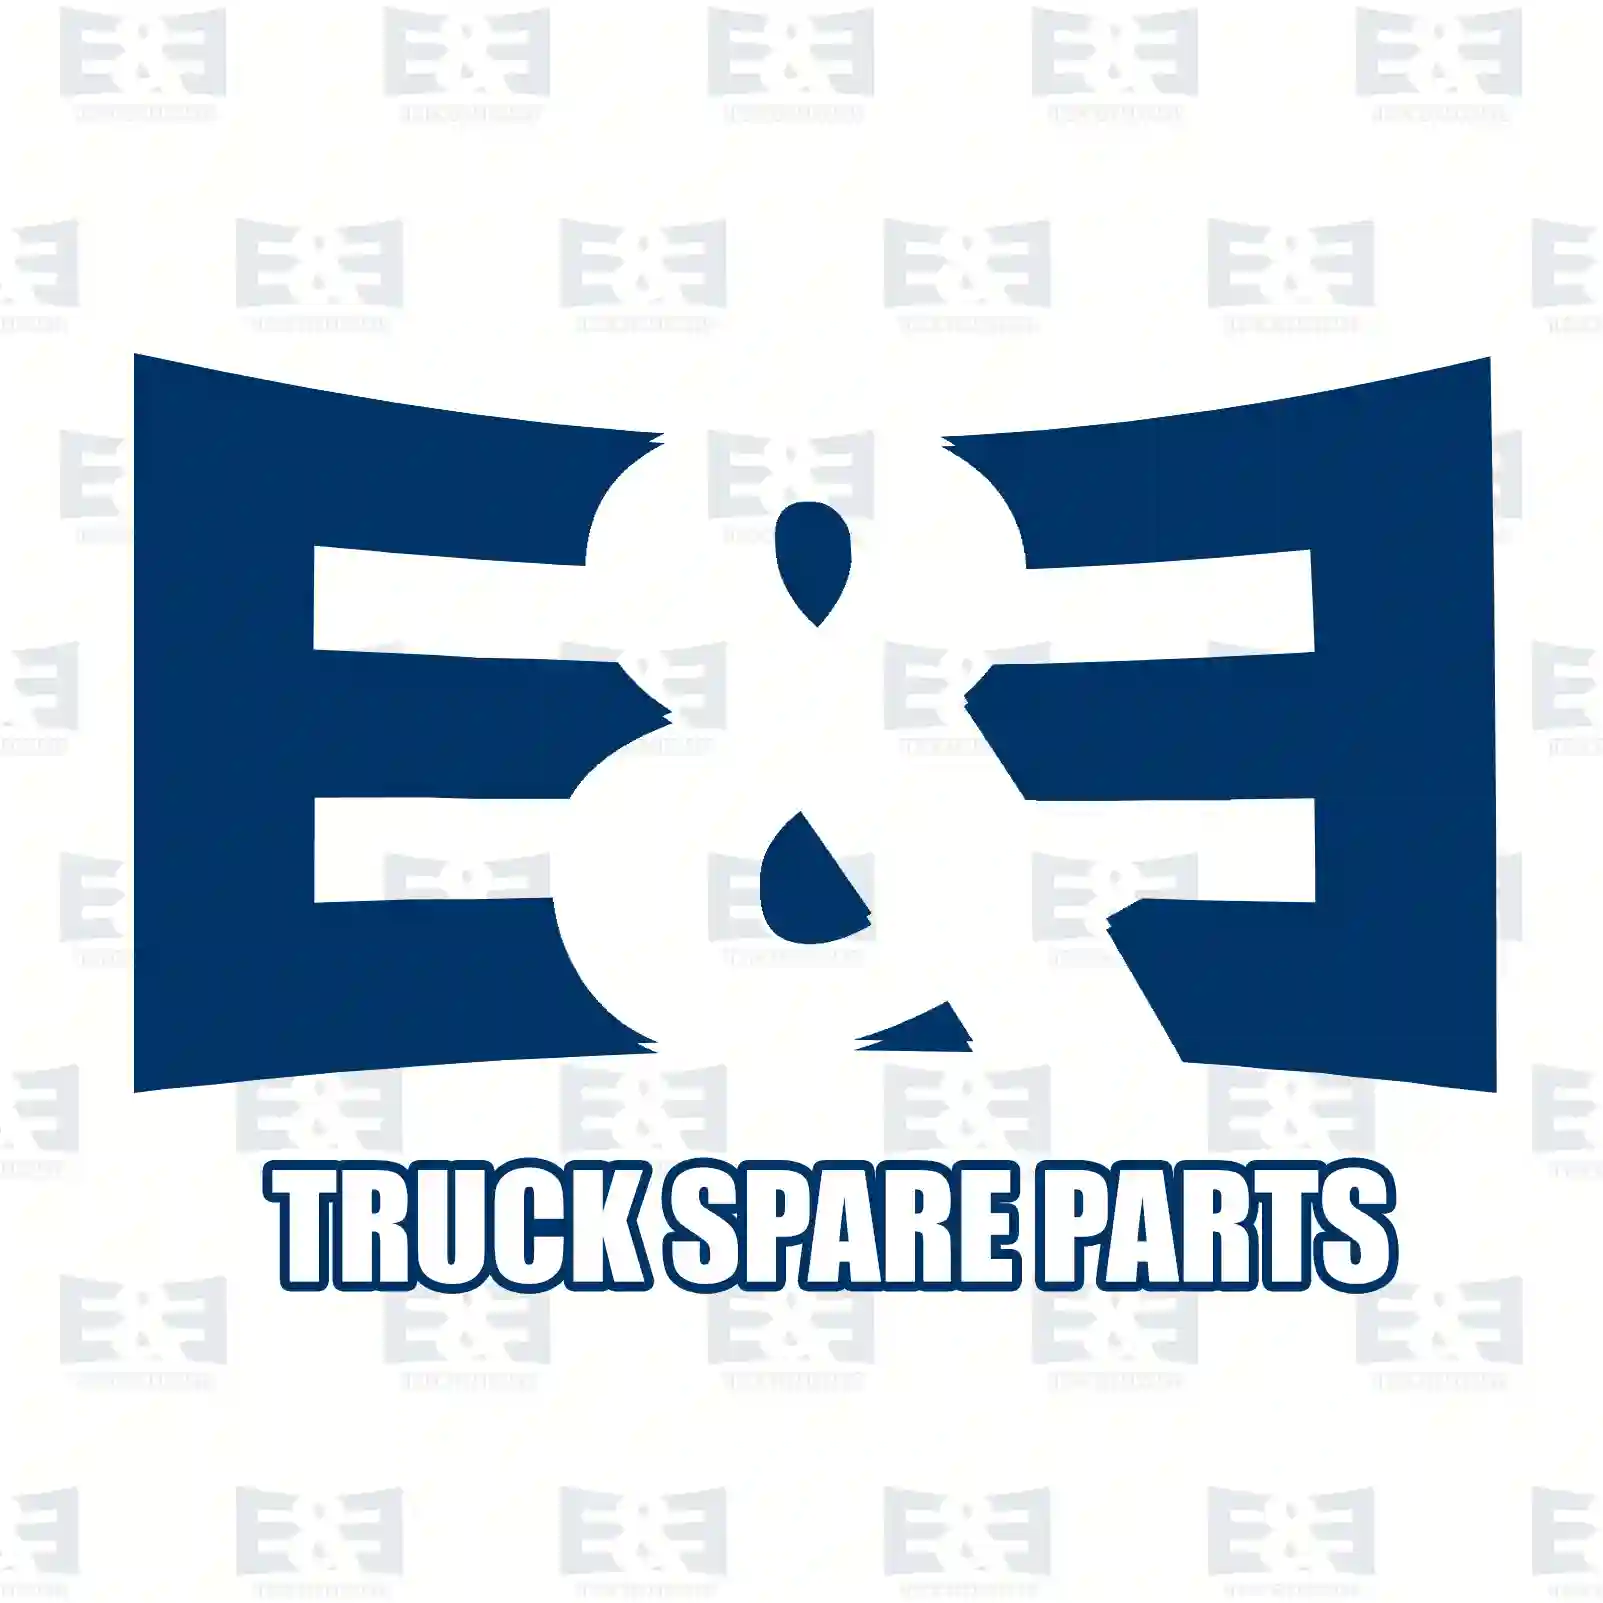 Double drive shaft, 2E2276903, 81364026511, 81364026523, 81364026530 ||  2E2276903 E&E Truck Spare Parts | Truck Spare Parts, Auotomotive Spare Parts Double drive shaft, 2E2276903, 81364026511, 81364026523, 81364026530 ||  2E2276903 E&E Truck Spare Parts | Truck Spare Parts, Auotomotive Spare Parts